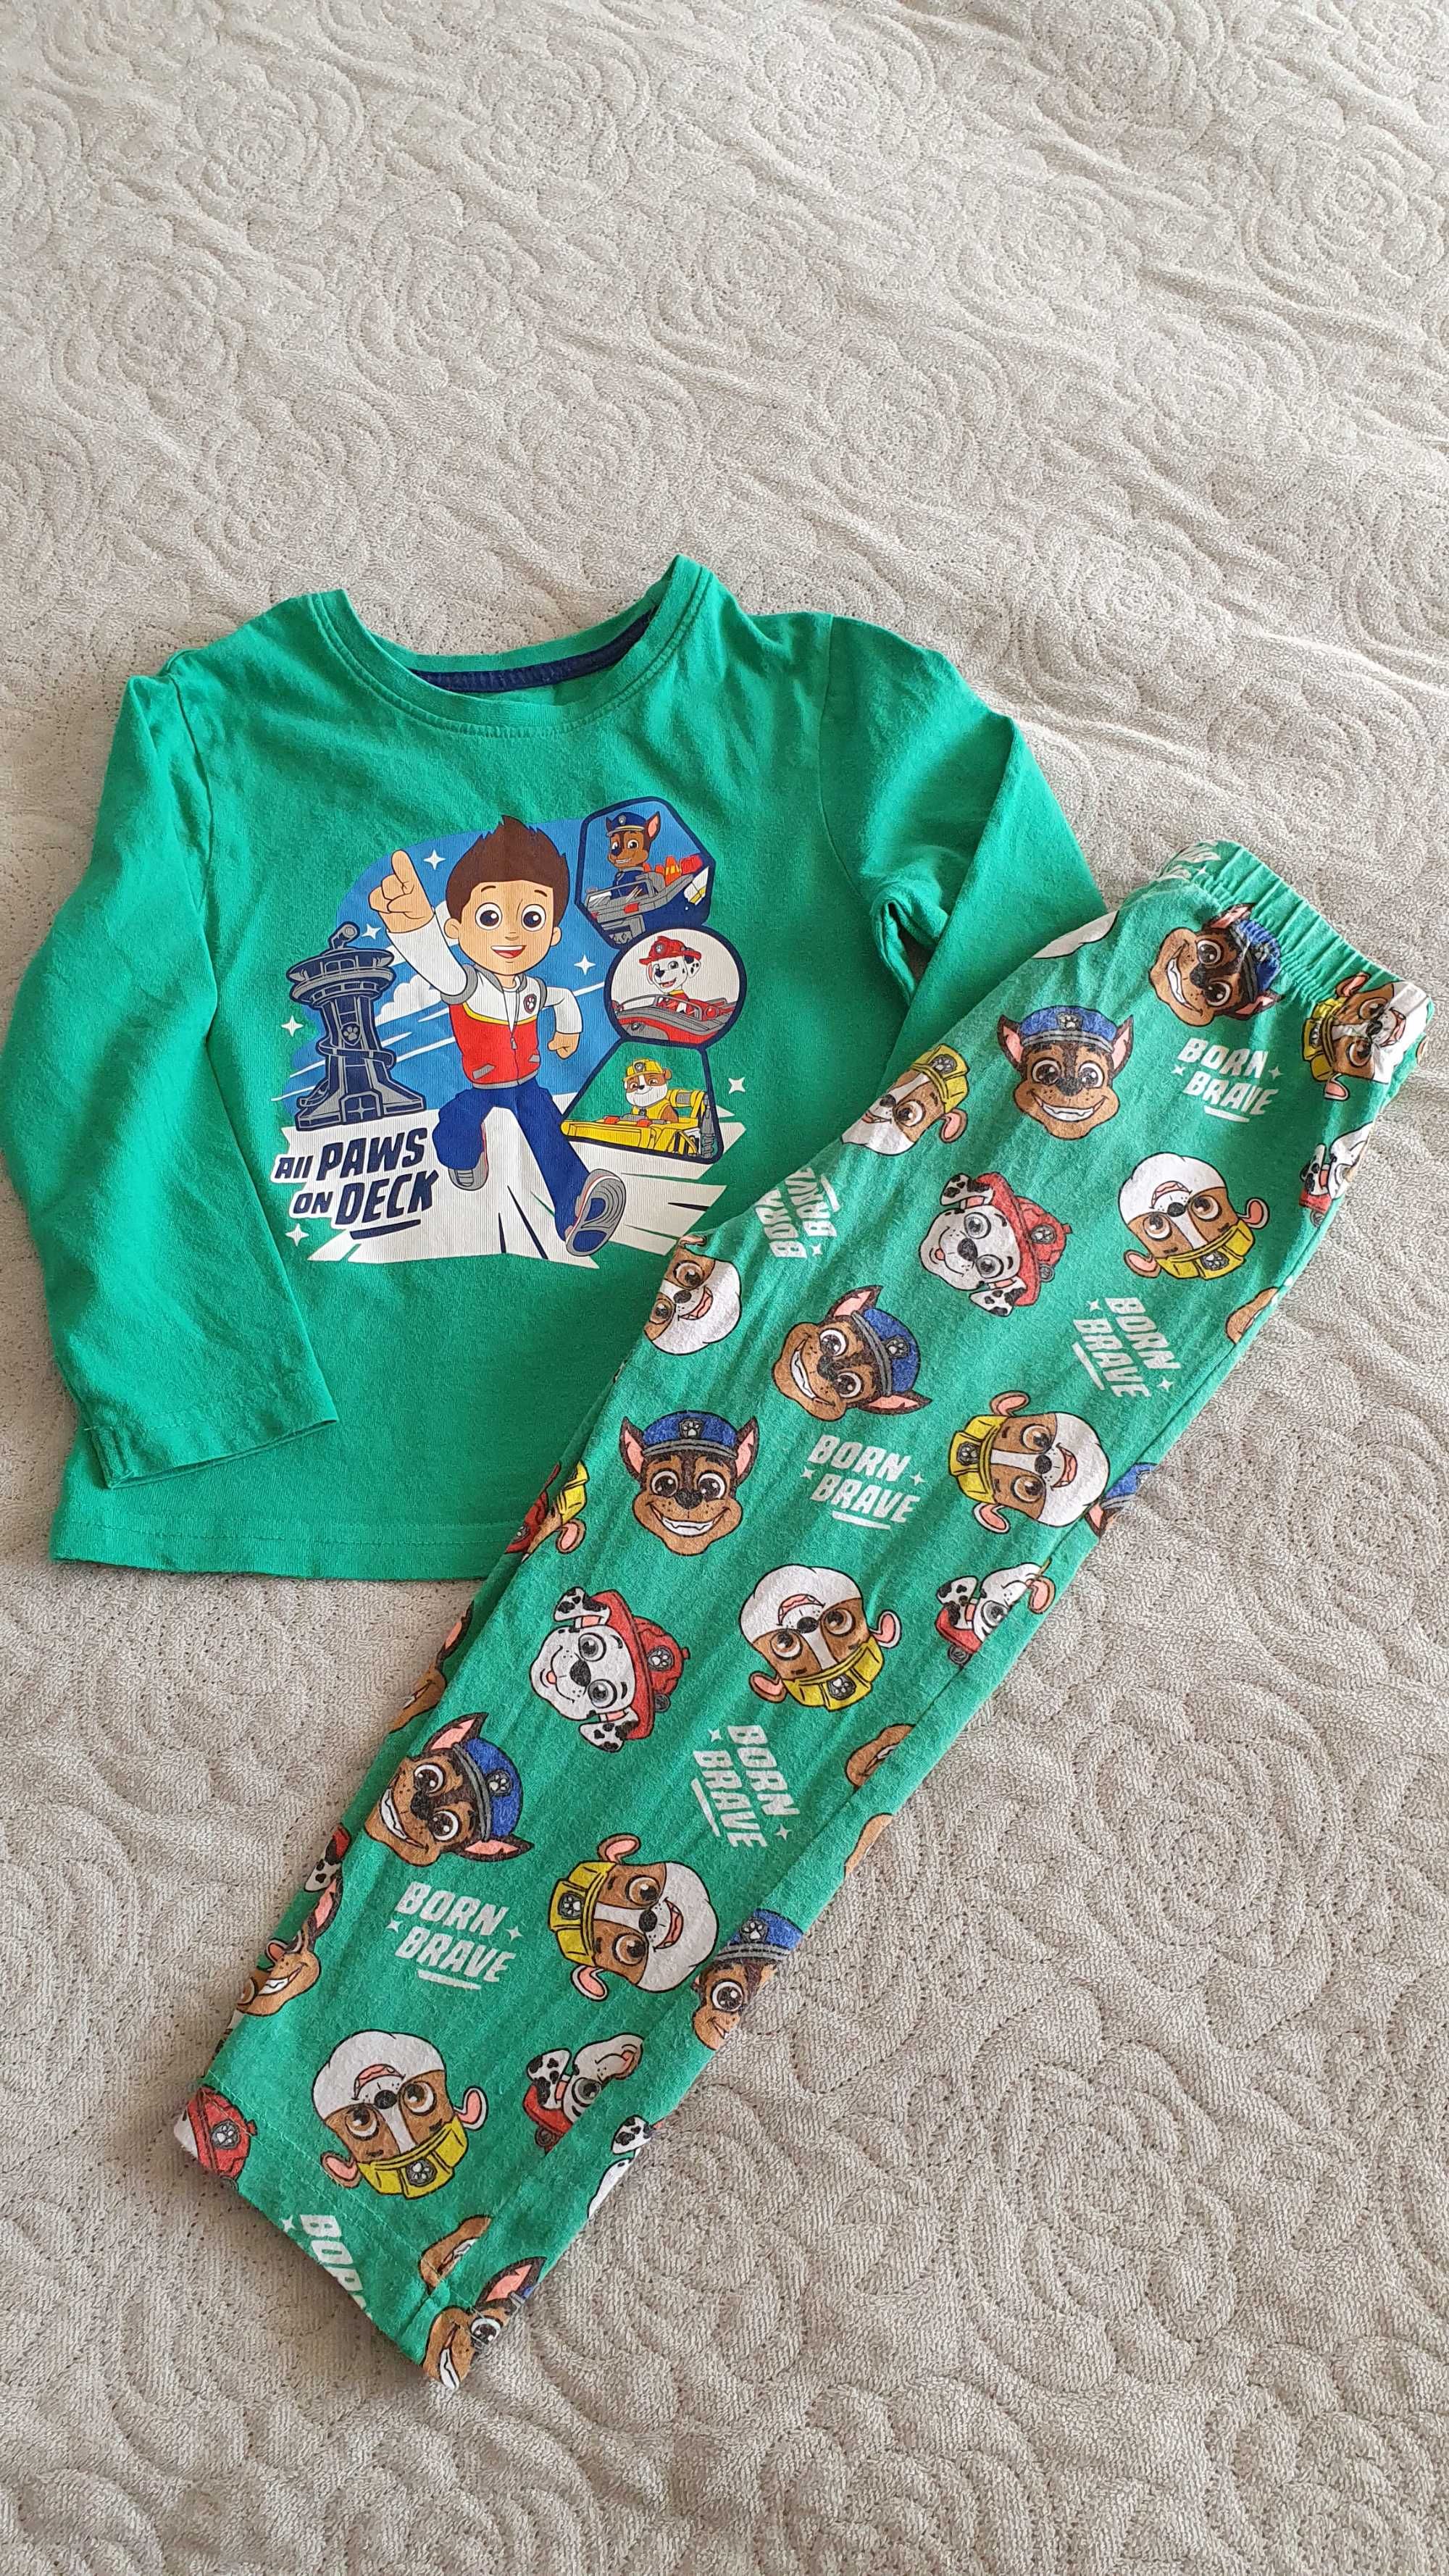 Primark Psi patrol piżama dla chłopca rozmiar 98